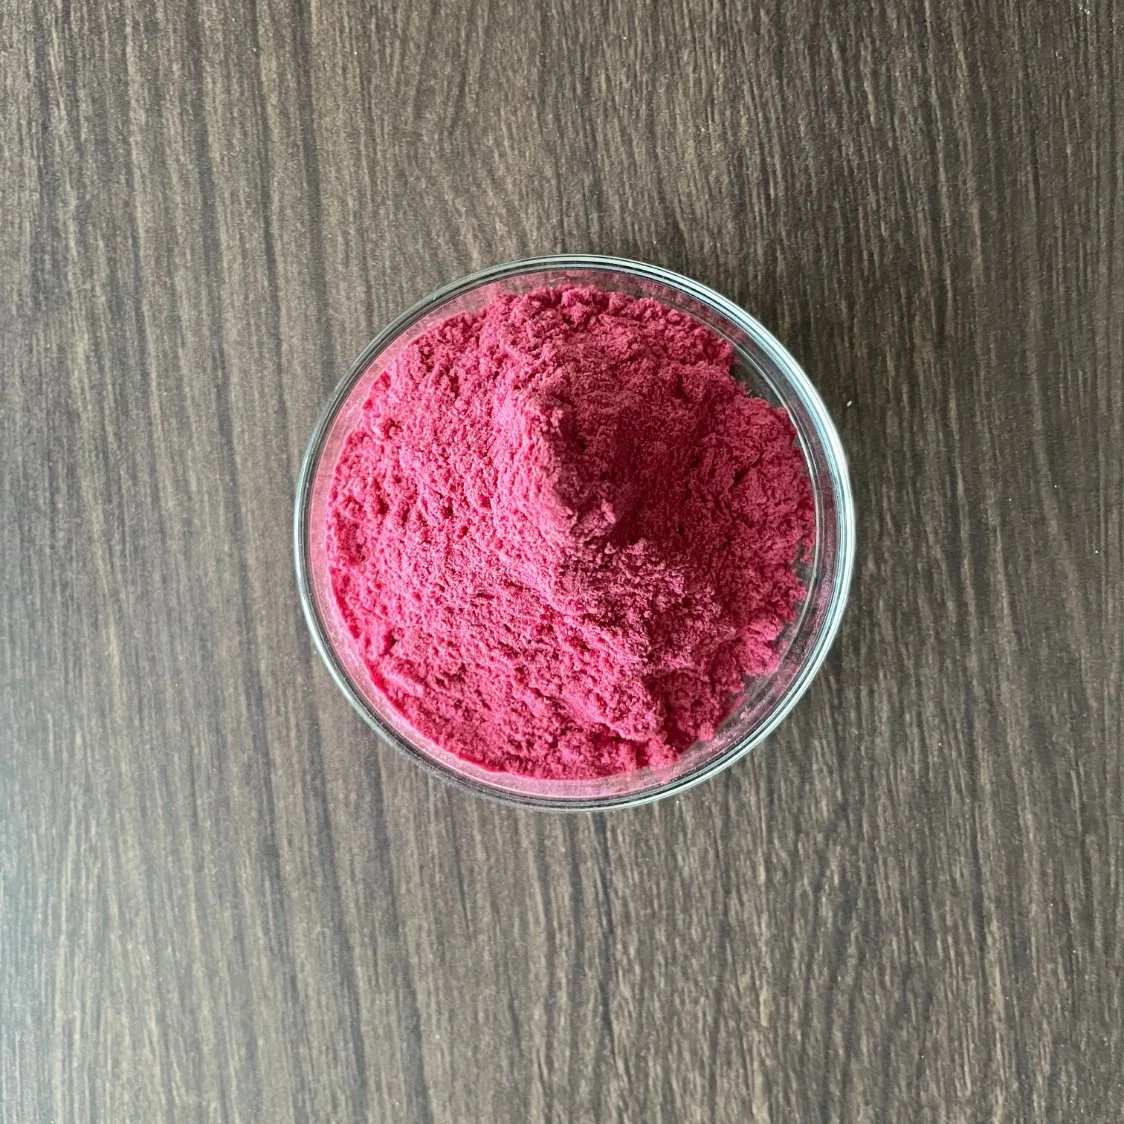 Pink Pitaya Powder Freeze Dried Natural Red Dragon Fruit Powder